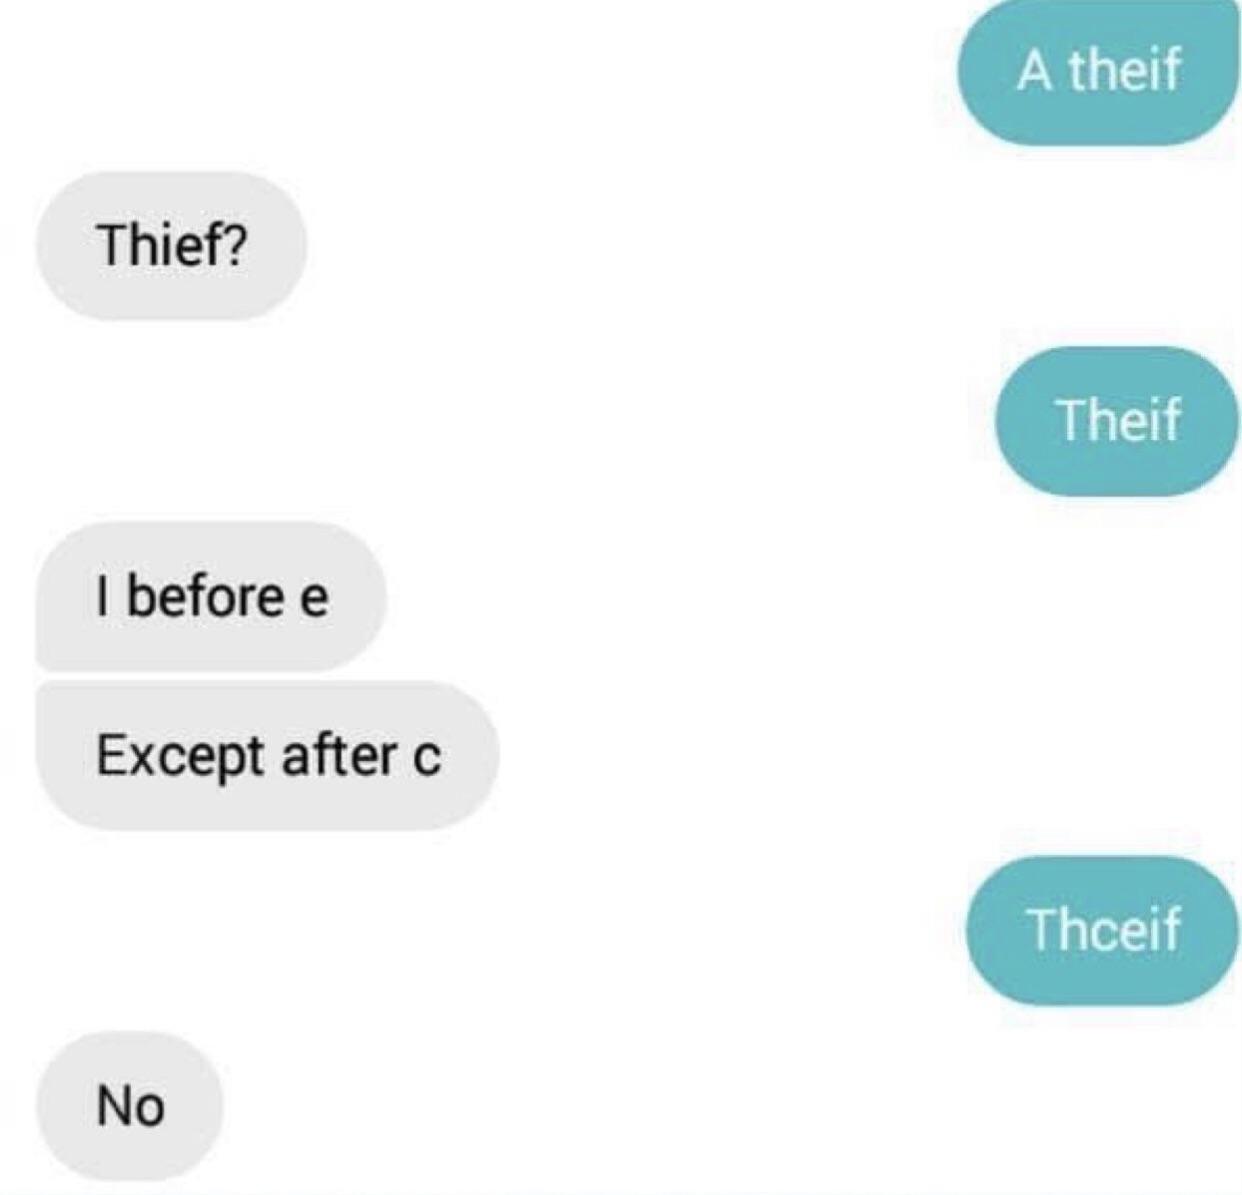 Thceif